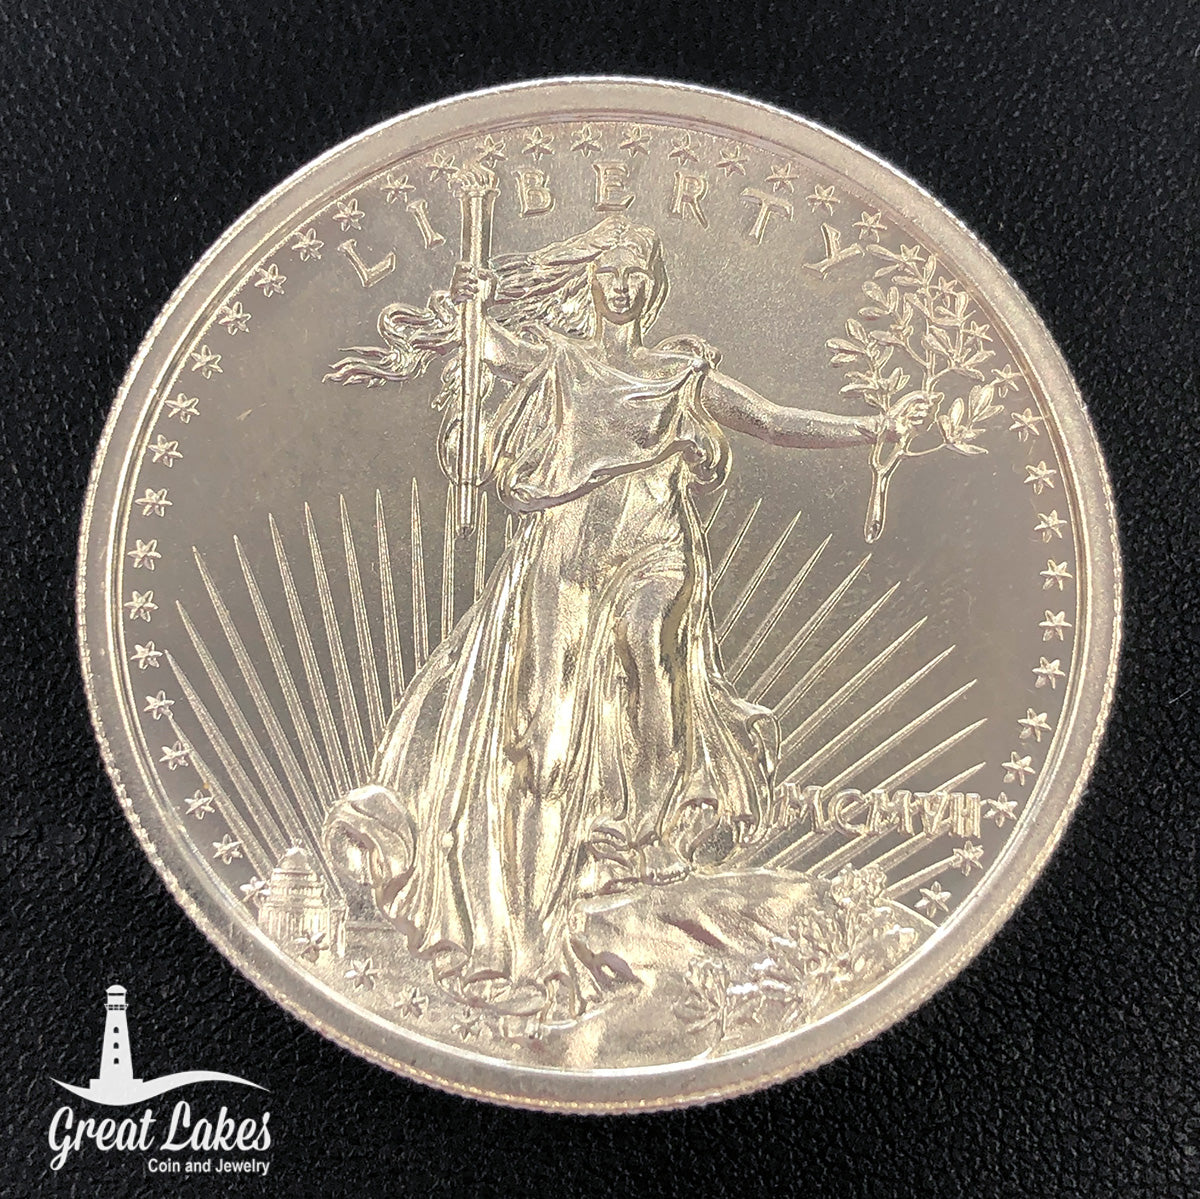 Intaglio Mint 2 oz Silver High Relief Saint-Gaudens Round